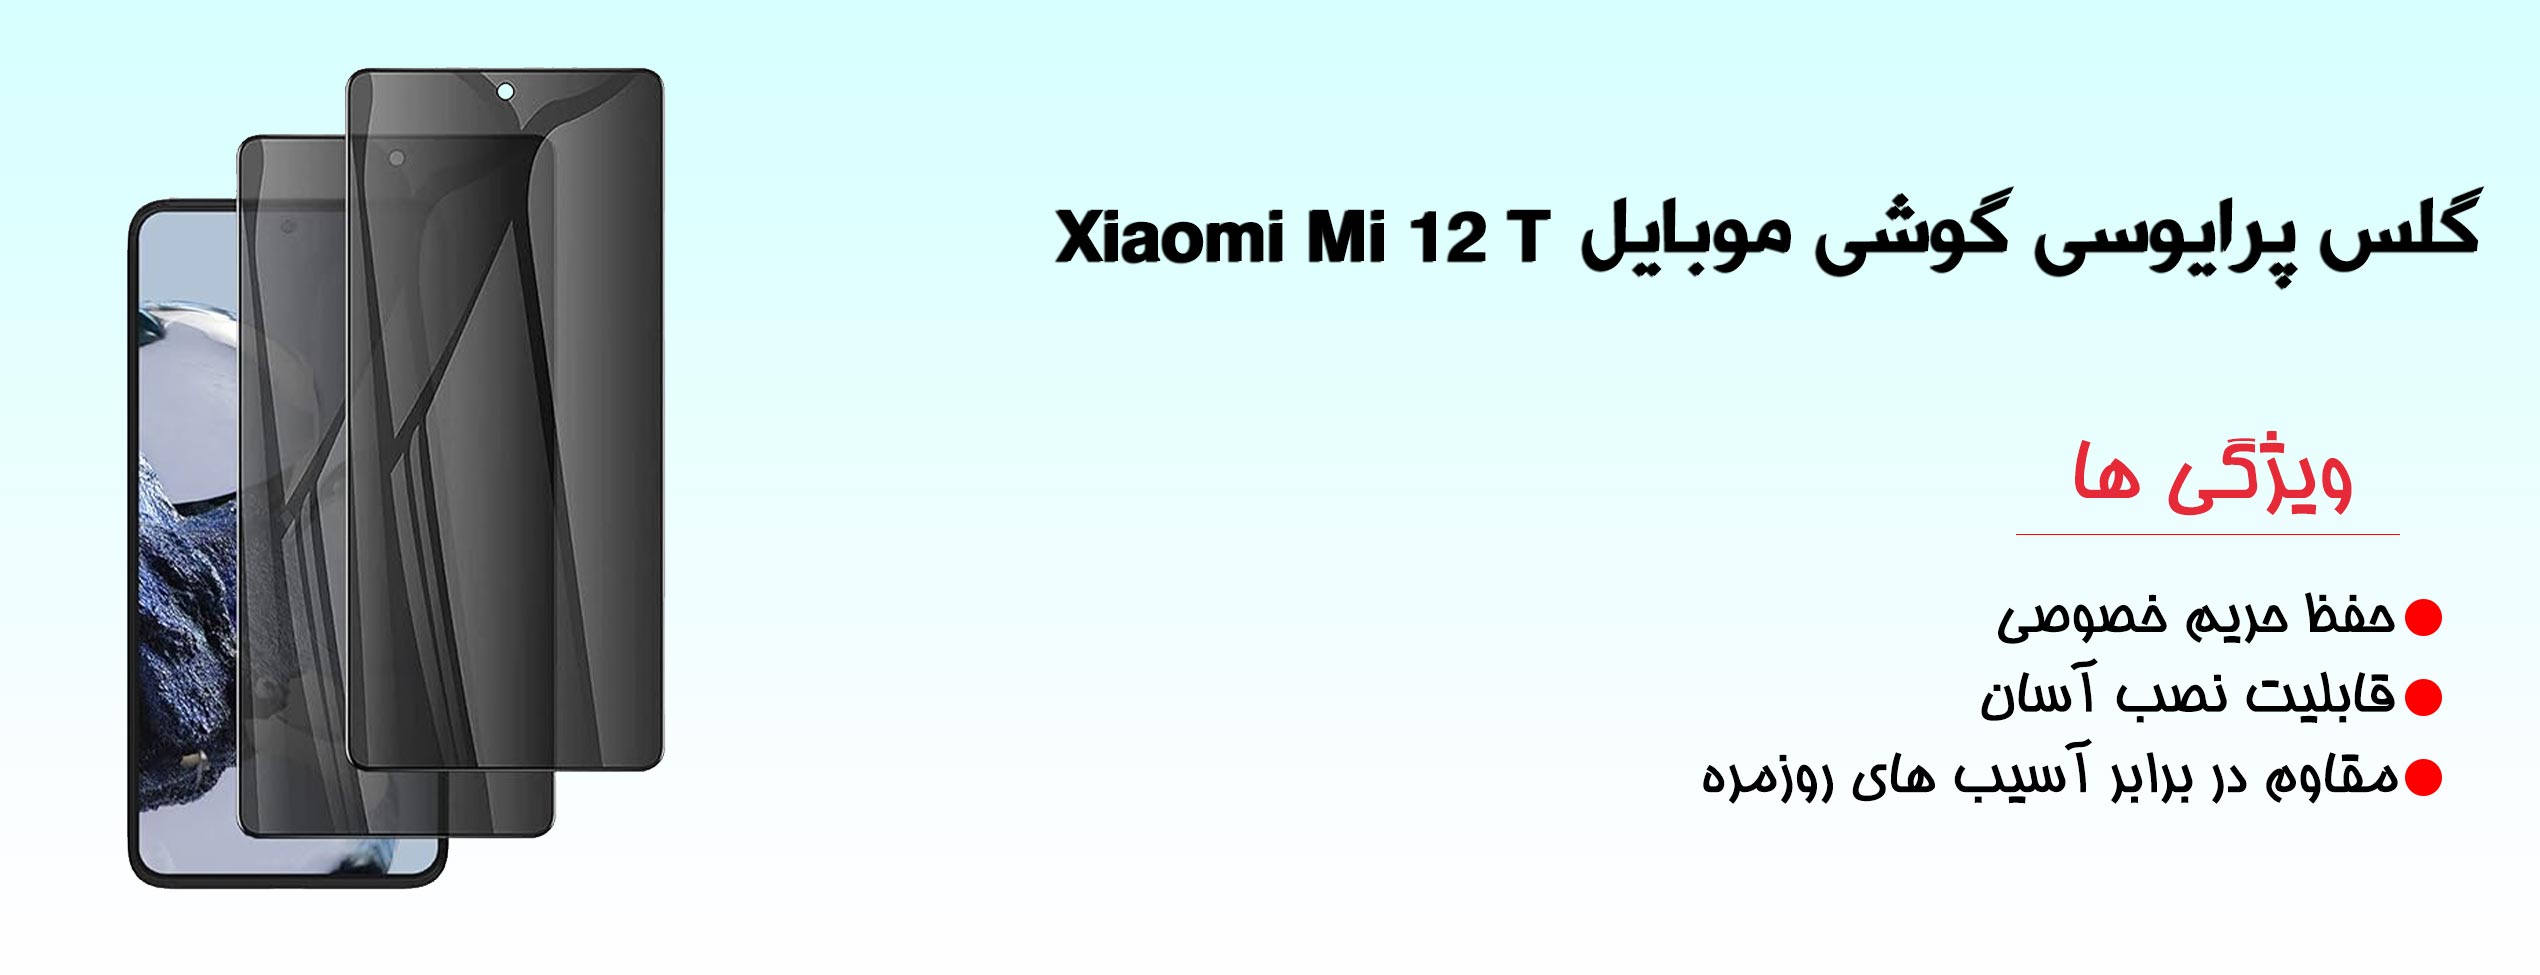 گلس پرایوسی موبایل شیائومی Xiaomi Mi 12 T